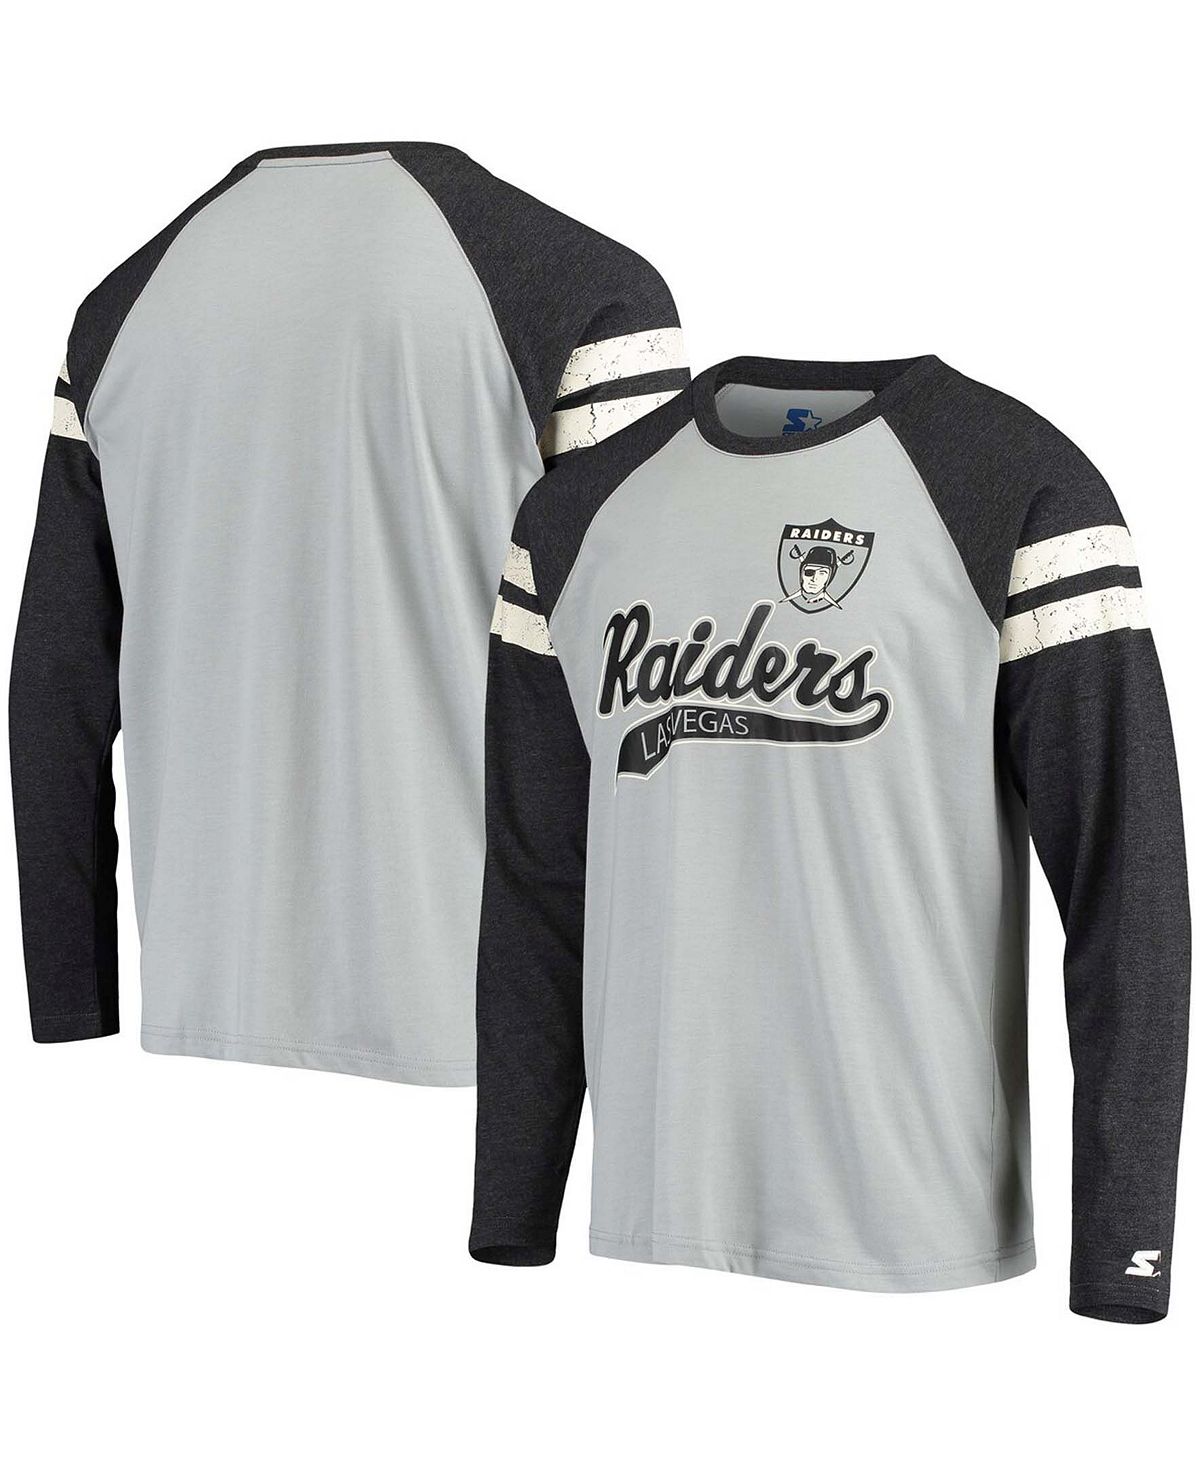 Мужская серебристо-черная футболка las vegas raiders throwback league с длинными рукавами и регланами tri-blend Starter, мульти cool spots las vegas